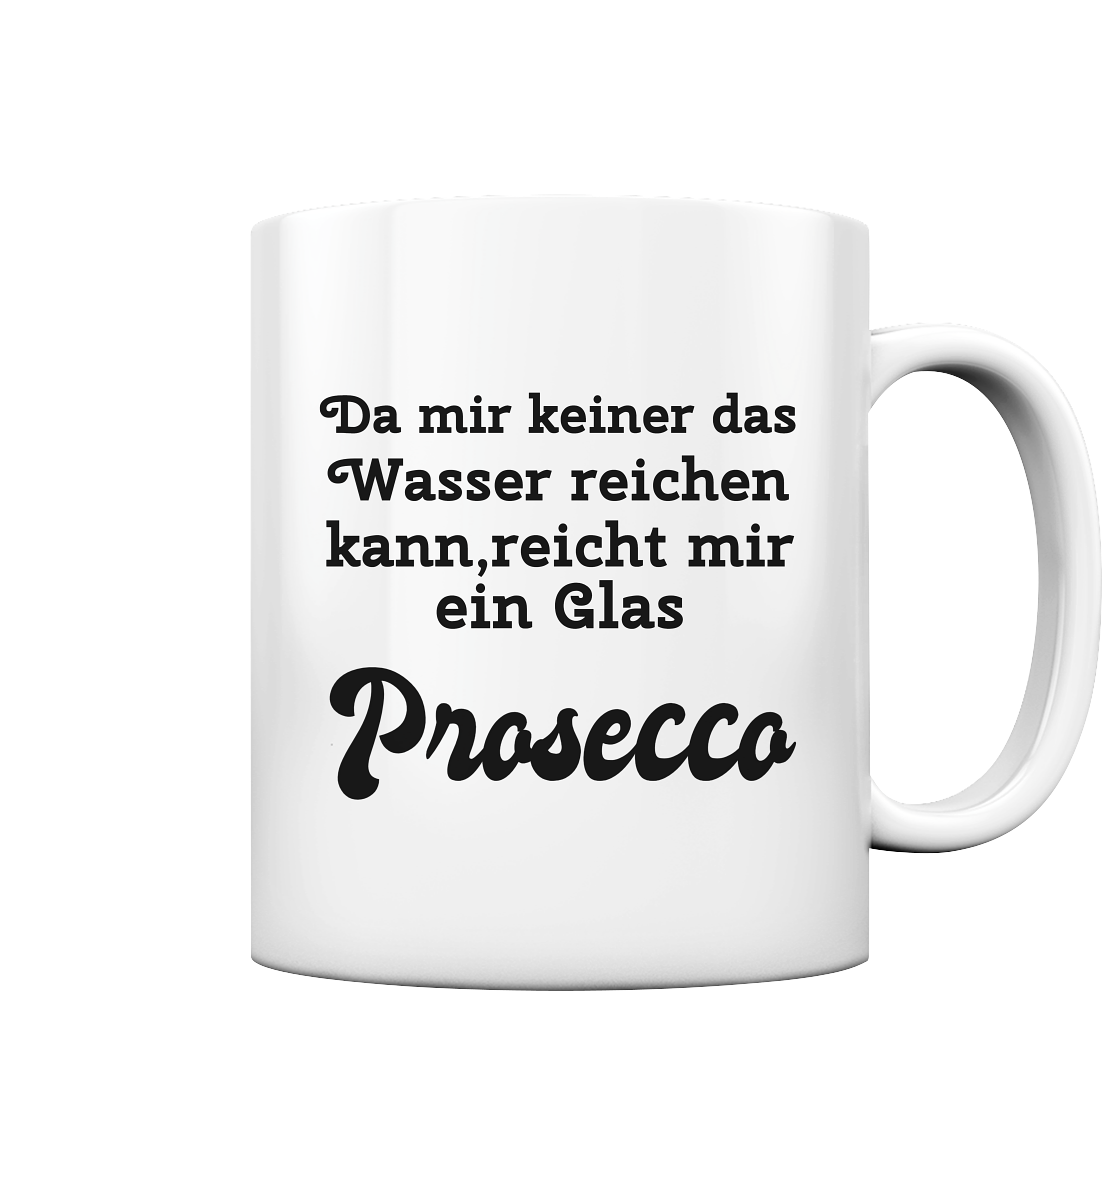 Da mir keiner das Wasser reichen kann, reicht mir ein Glas Prosecco -Designe Munich Palms  - Tasse glossy